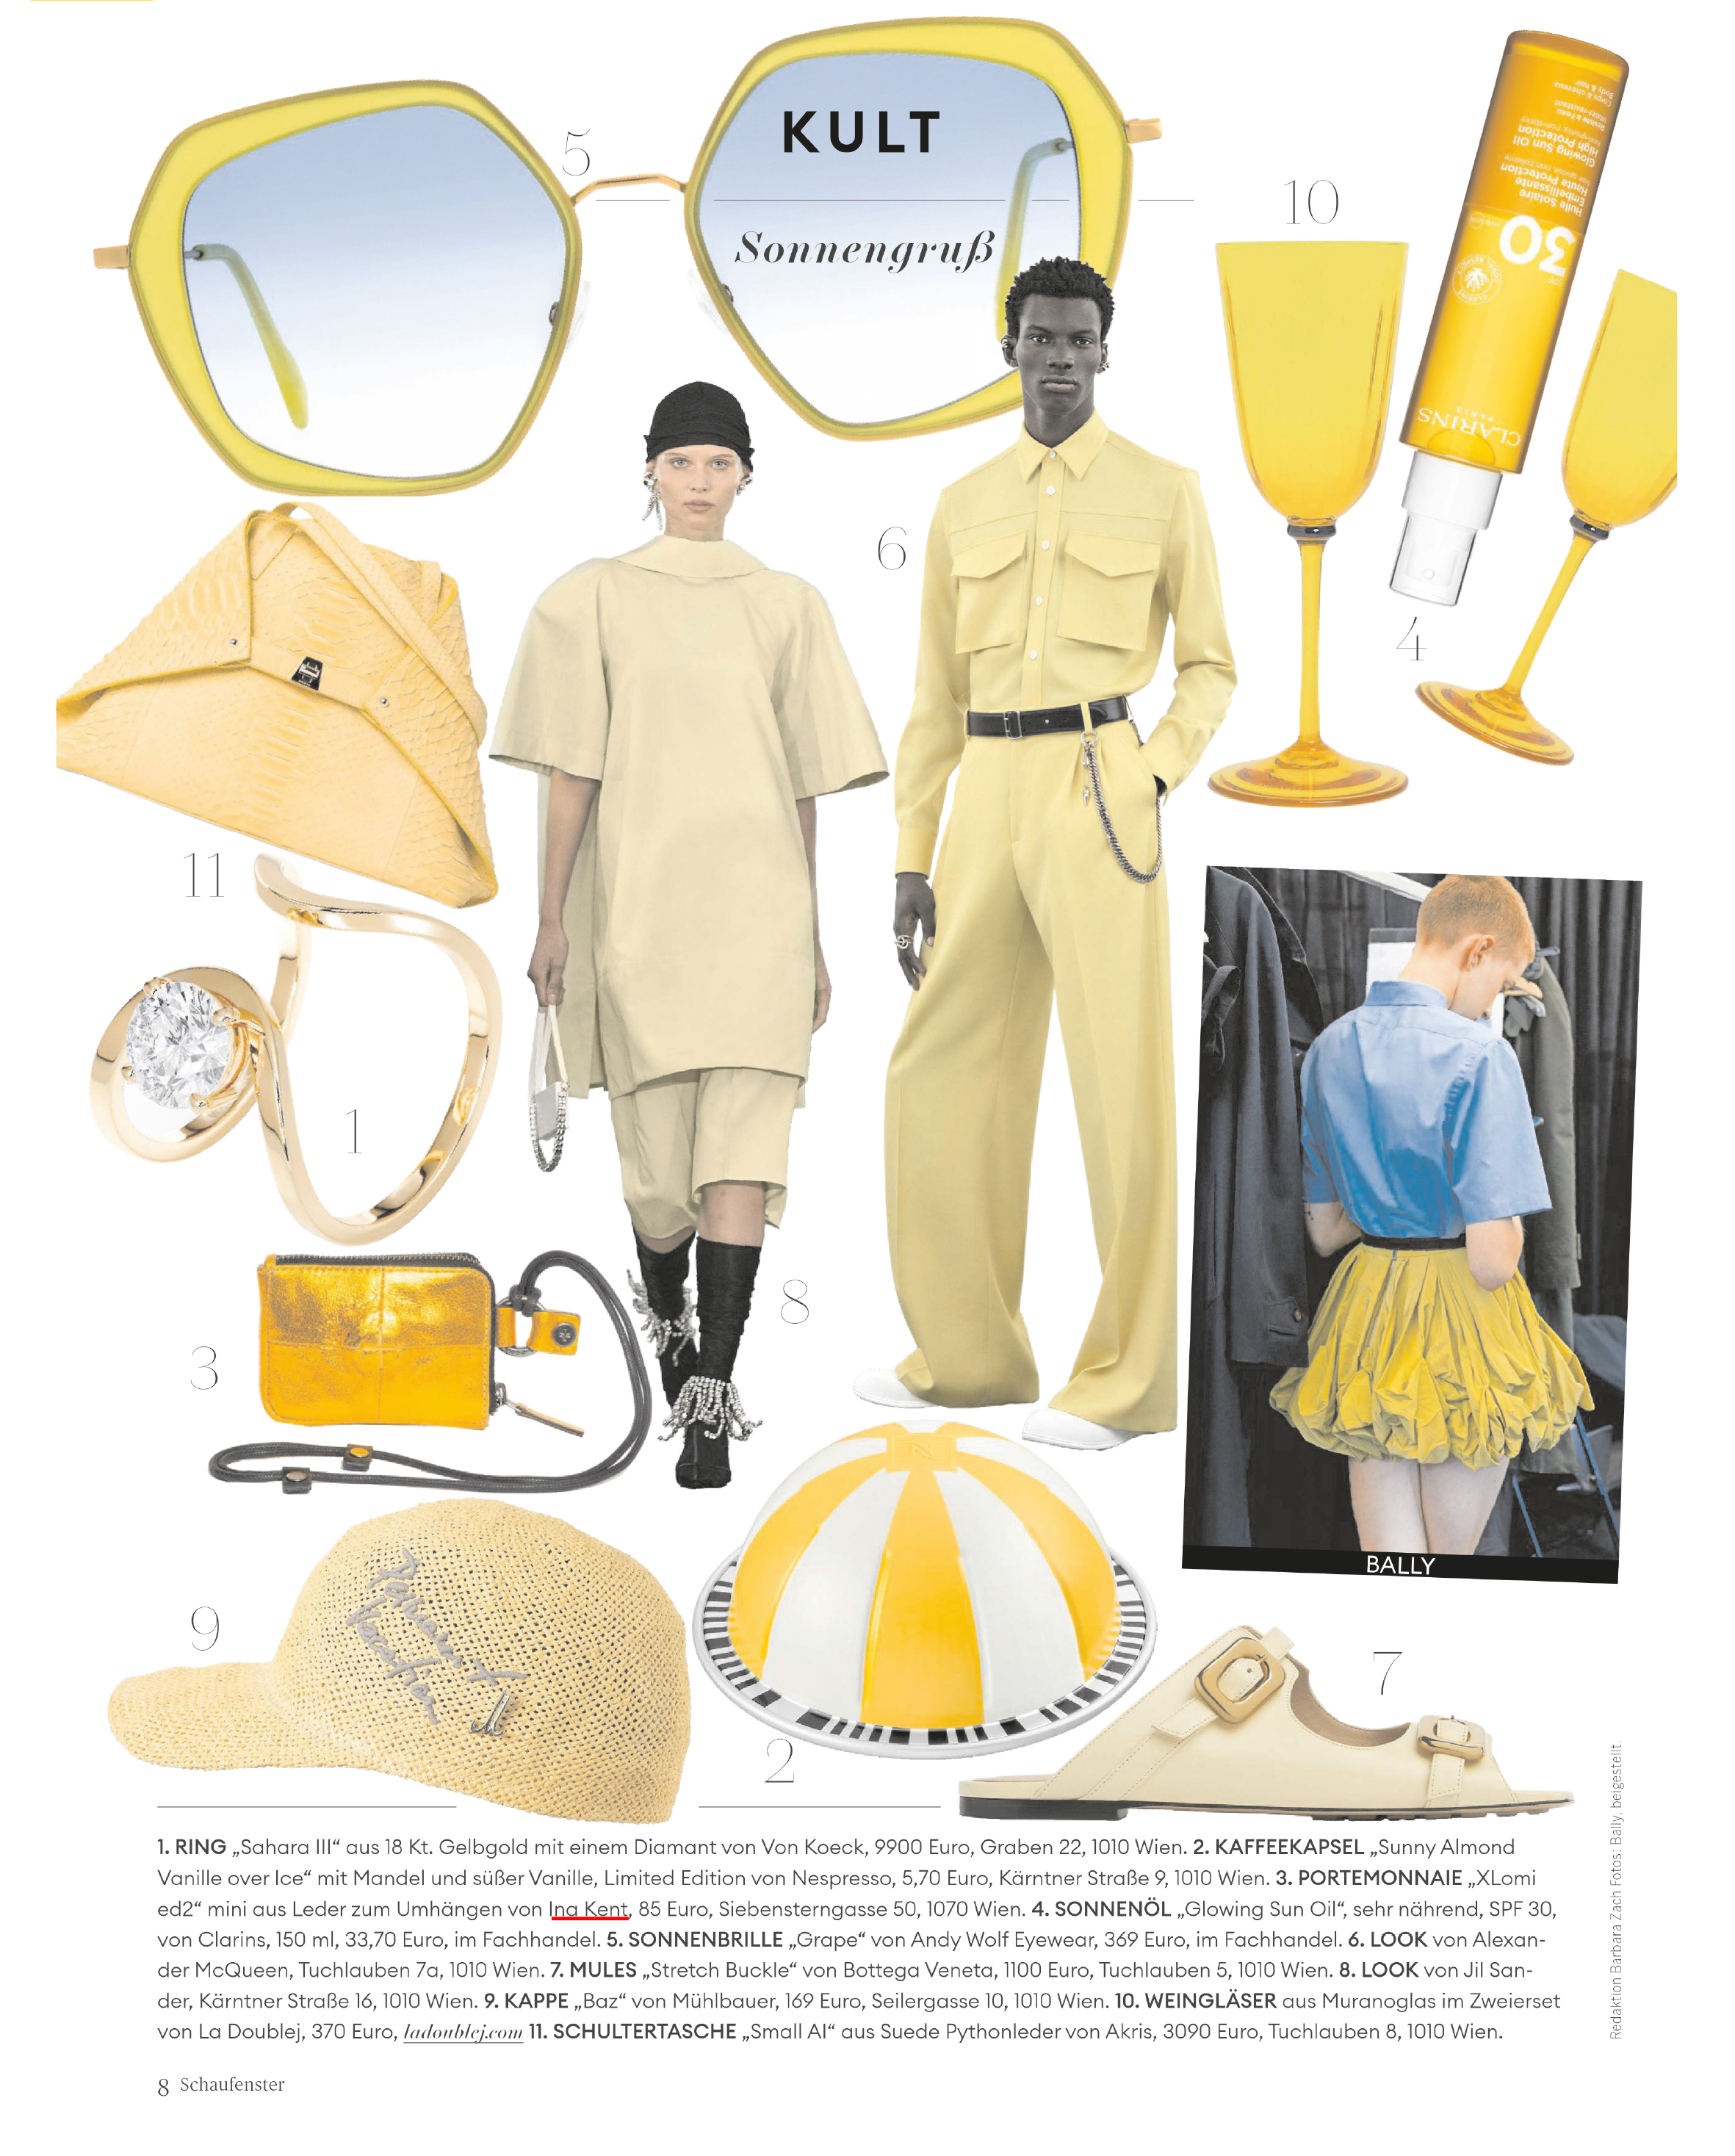 Eine Collage aus verschiedenen gelben und grauen Modeartikeln, darunter Accessoires, Kleidung und Wohndekor von INA KENT, hervorgehoben in einem stilvollen redaktionellen Layout.